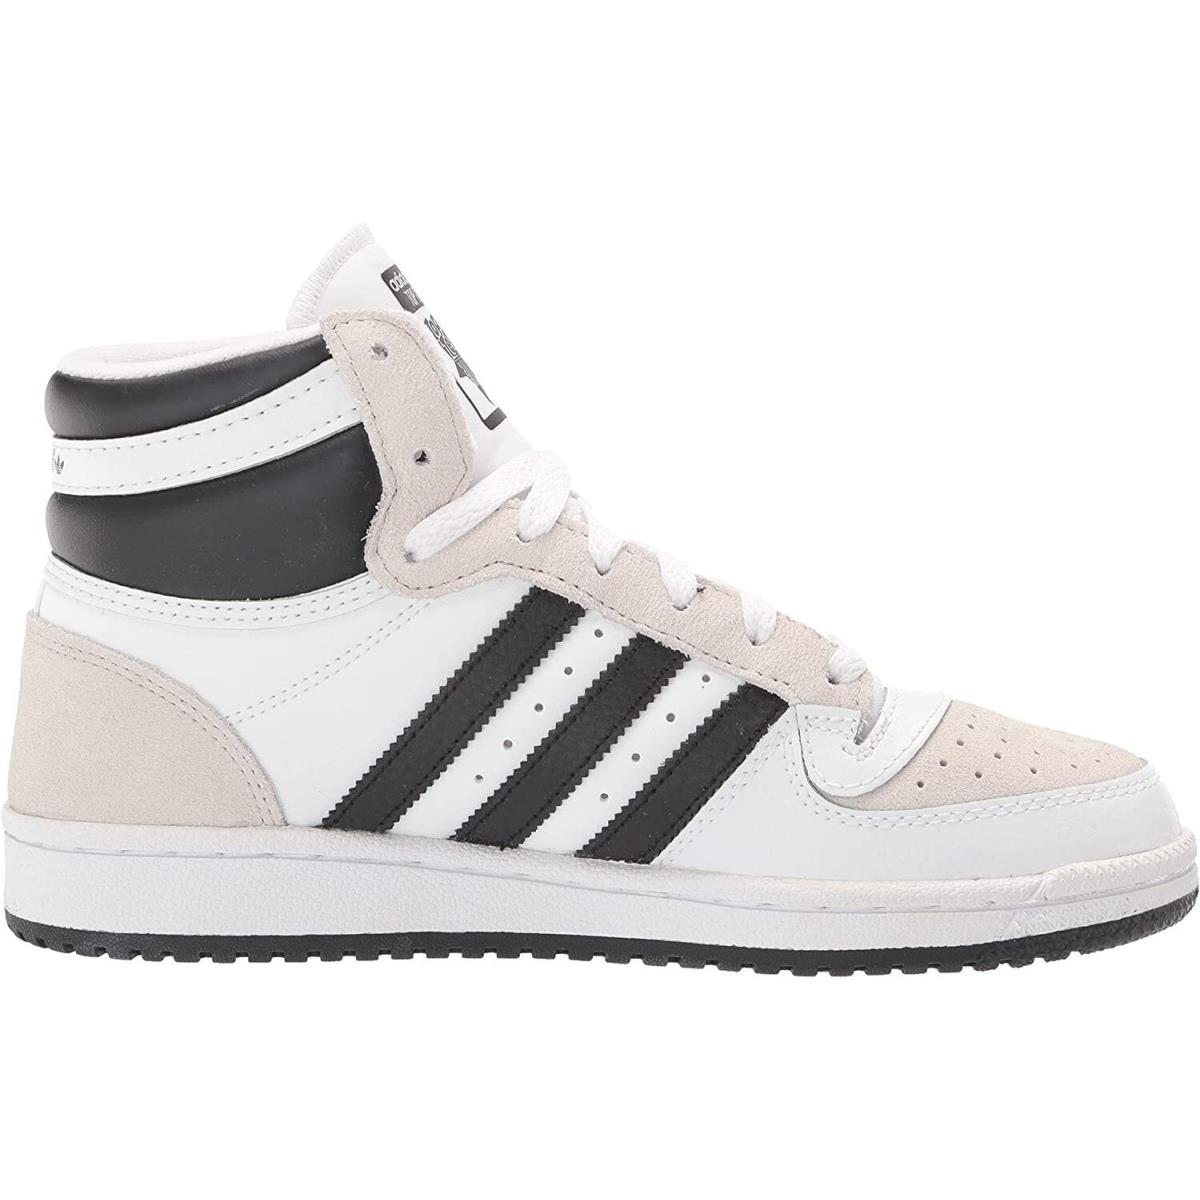 Adidas Top Ten RB Hi 3-Stripe Shoes White Black Men`s Size 11 GX0741